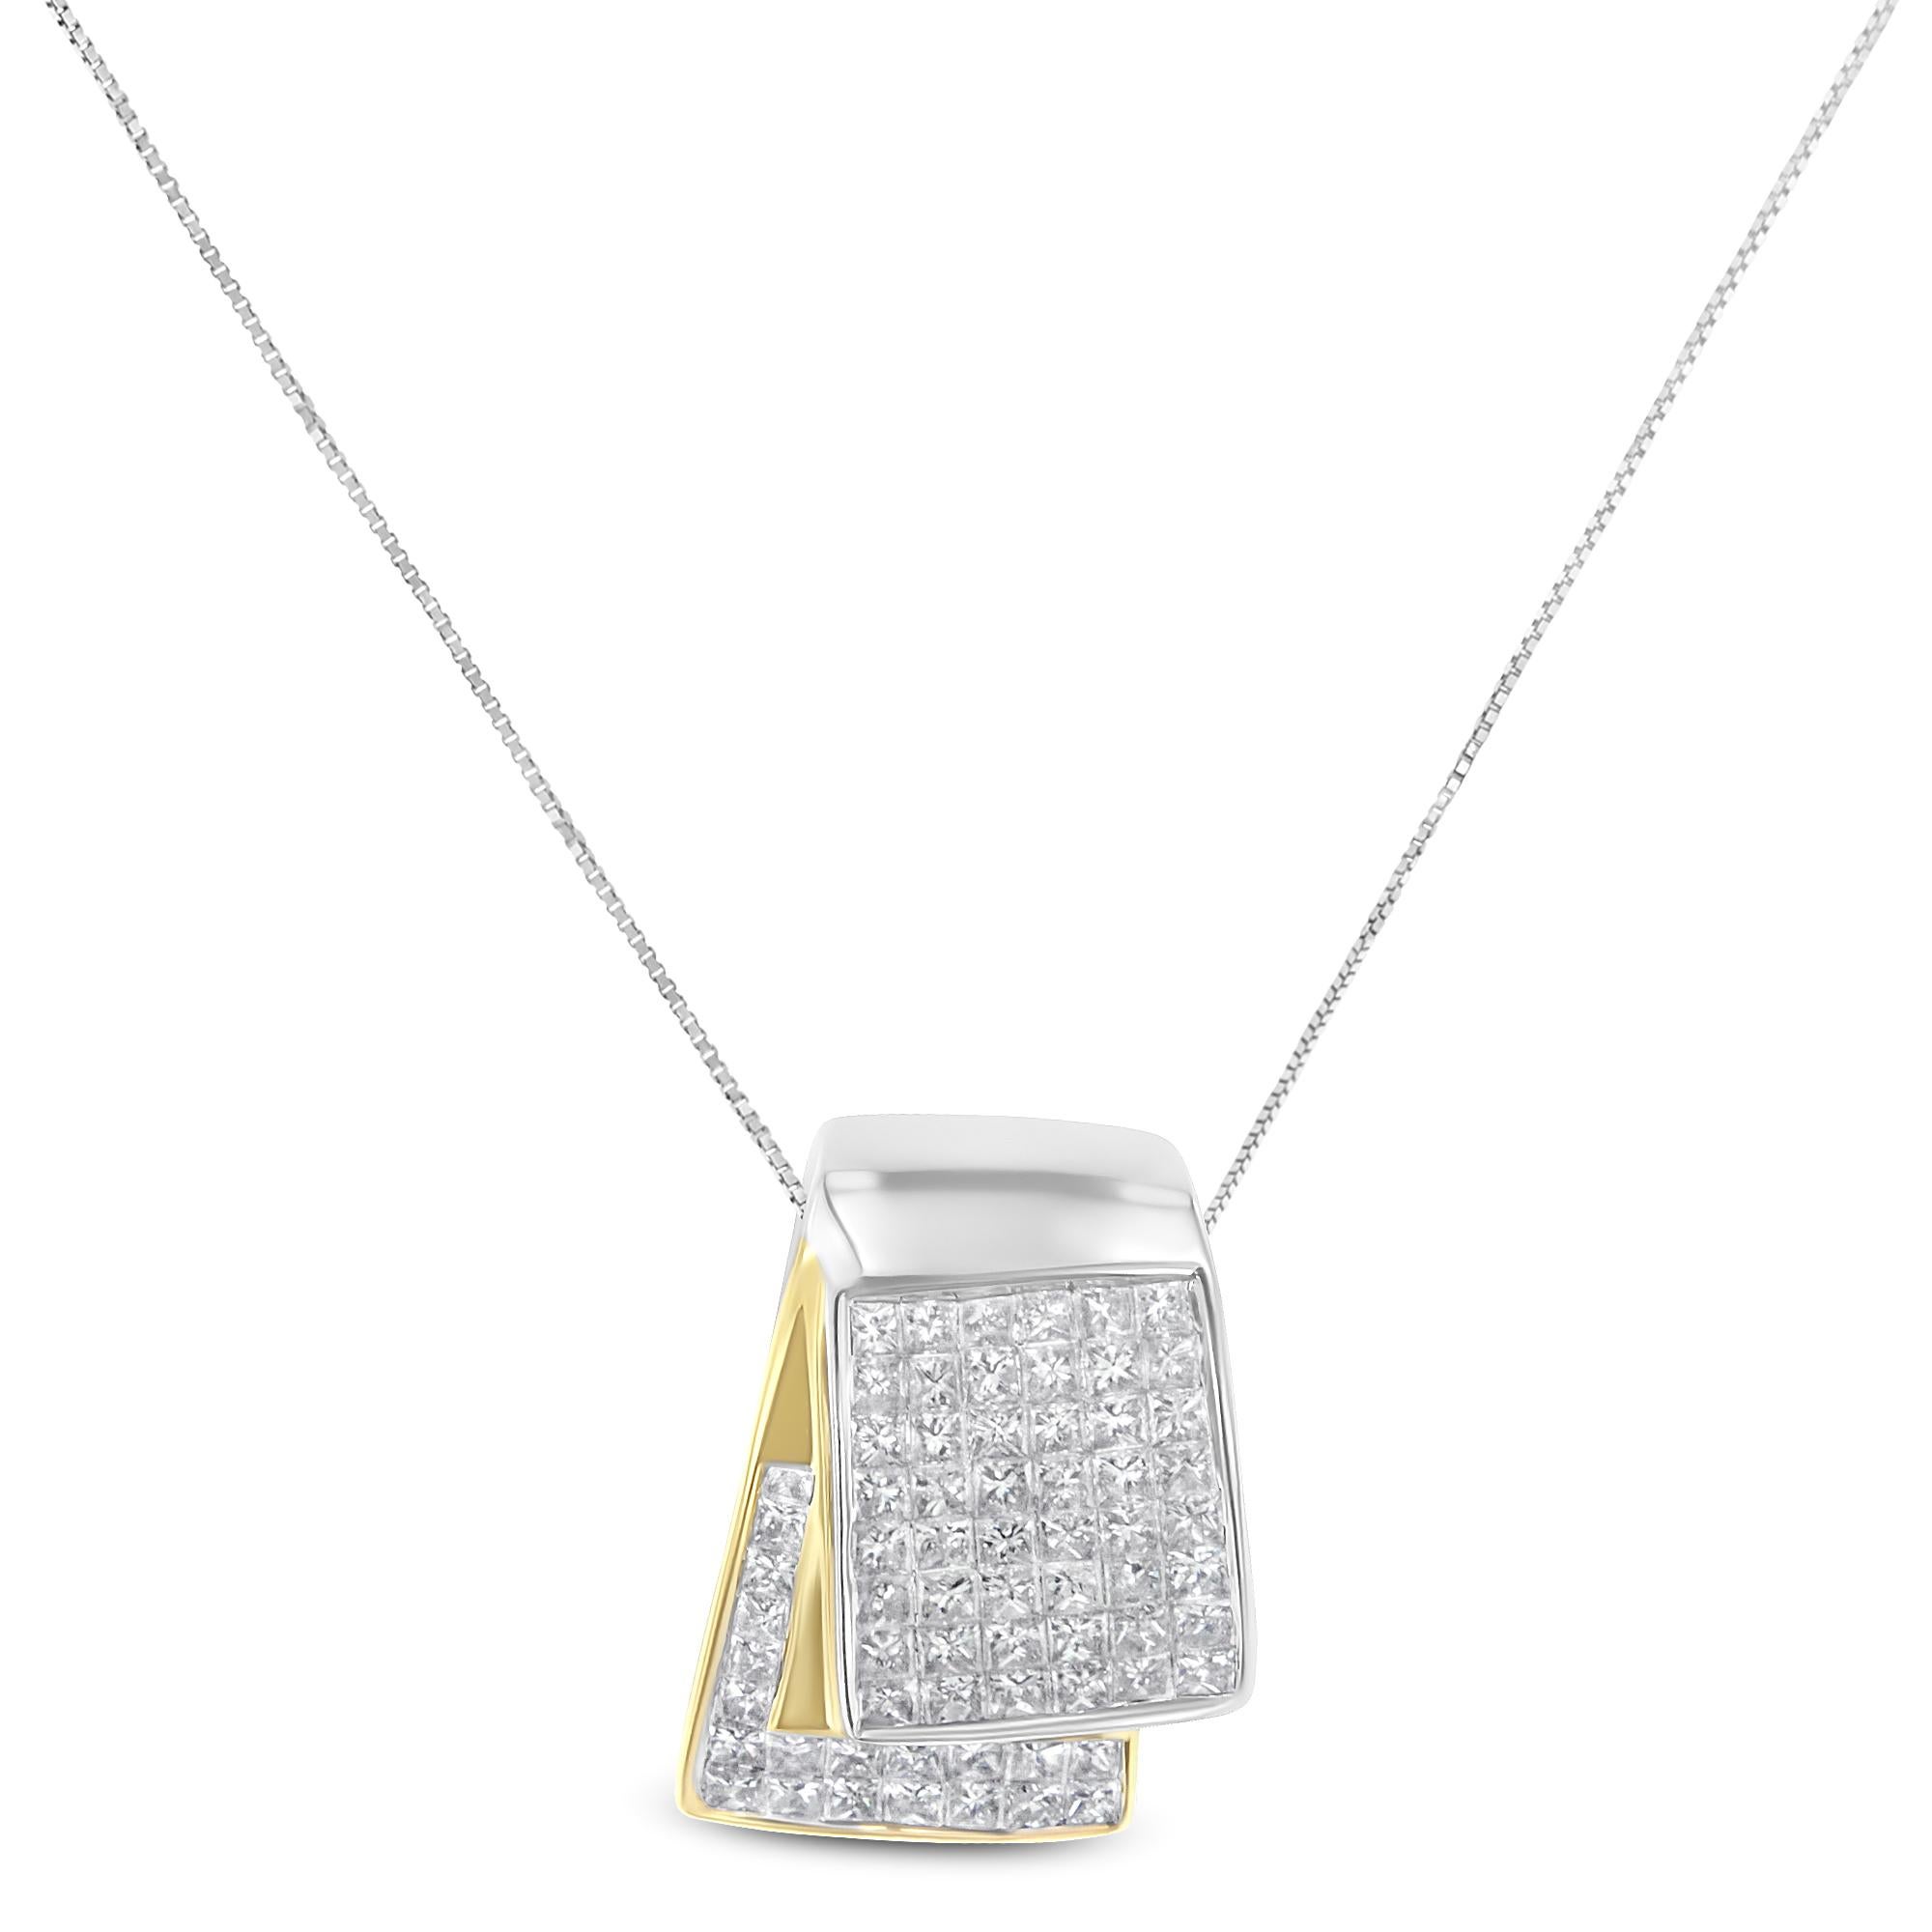 Un pendentif en or bicolore 14k est suspendu à une délicate chaîne en forme de boîte. Pièce féminine classique à mettre en valeur, ce collier complétera toutes sortes de tenues. Avec un design plié unique, le pendentif est incrusté de diamants